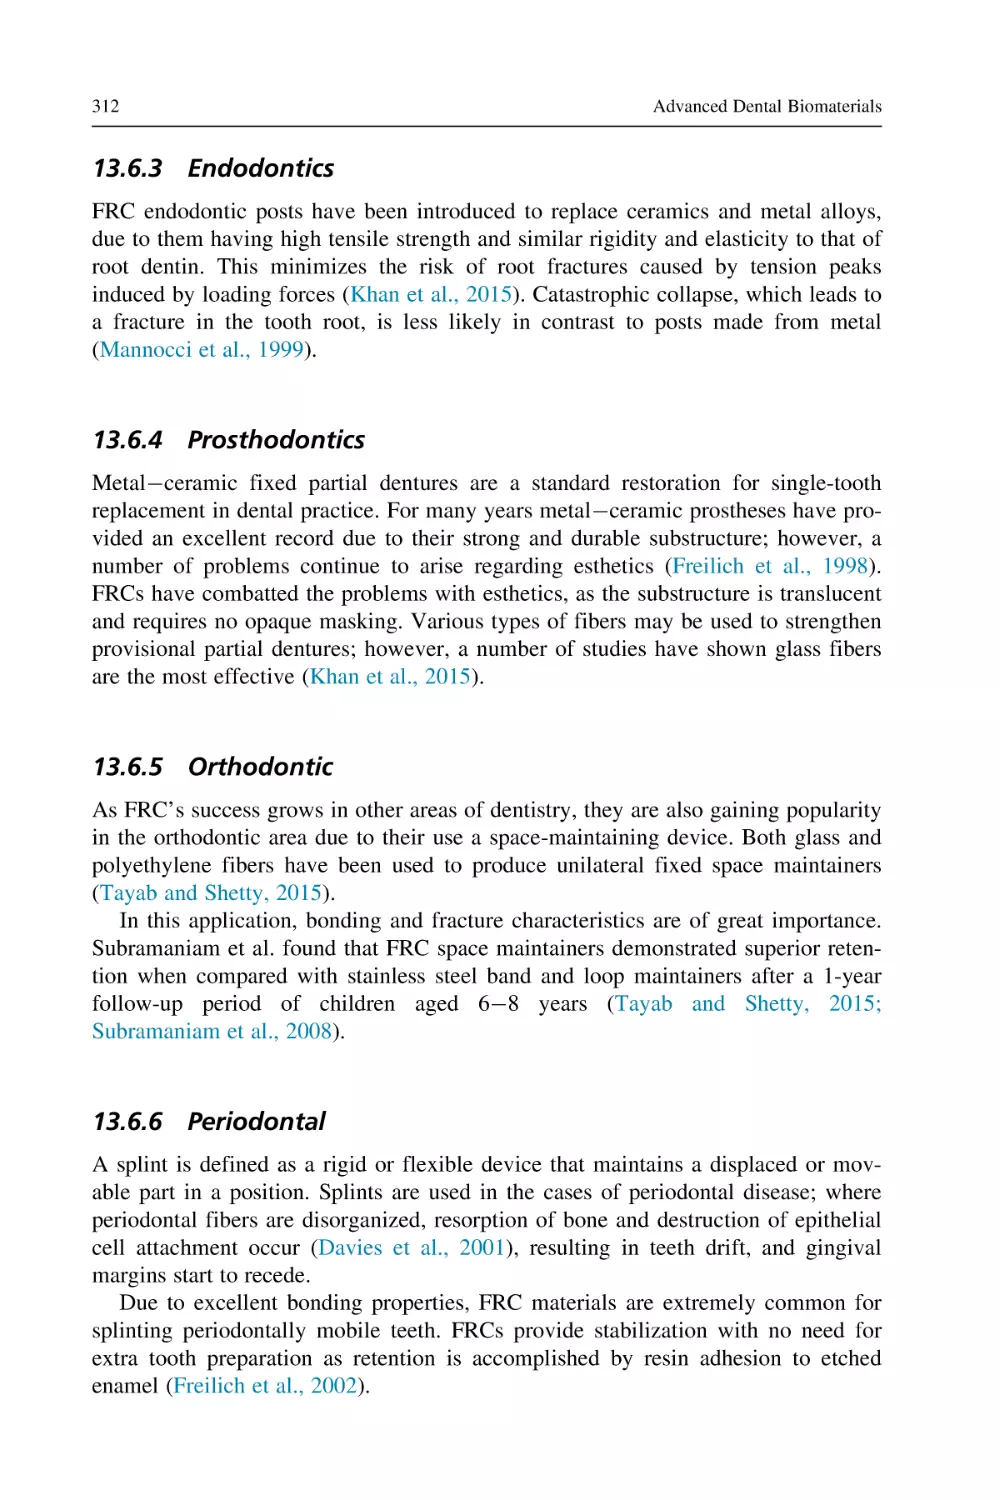 13.6.3 Endodontics
13.6.4 Prosthodontics
13.6.5 Orthodontic
13.6.6 Periodontal